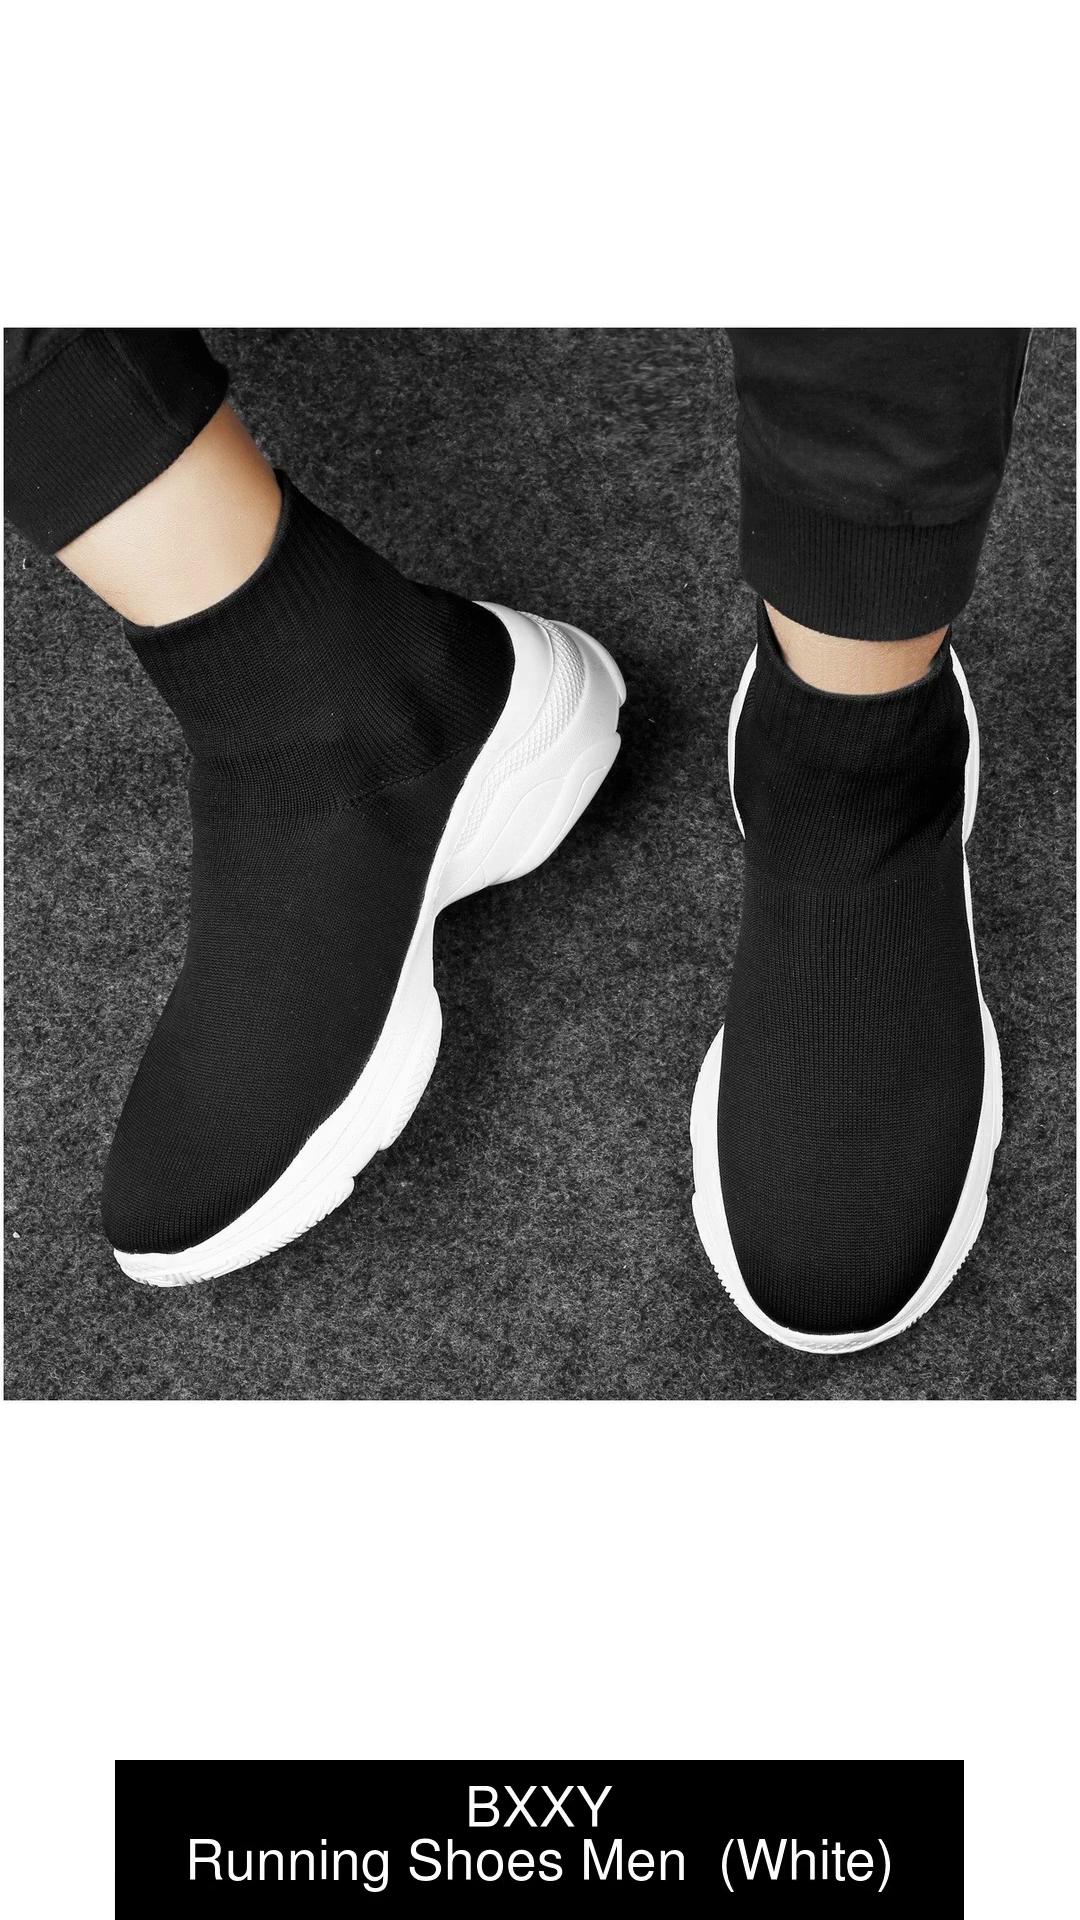  HYXITVCG Dance Socks for Shoe, Shoe Socks